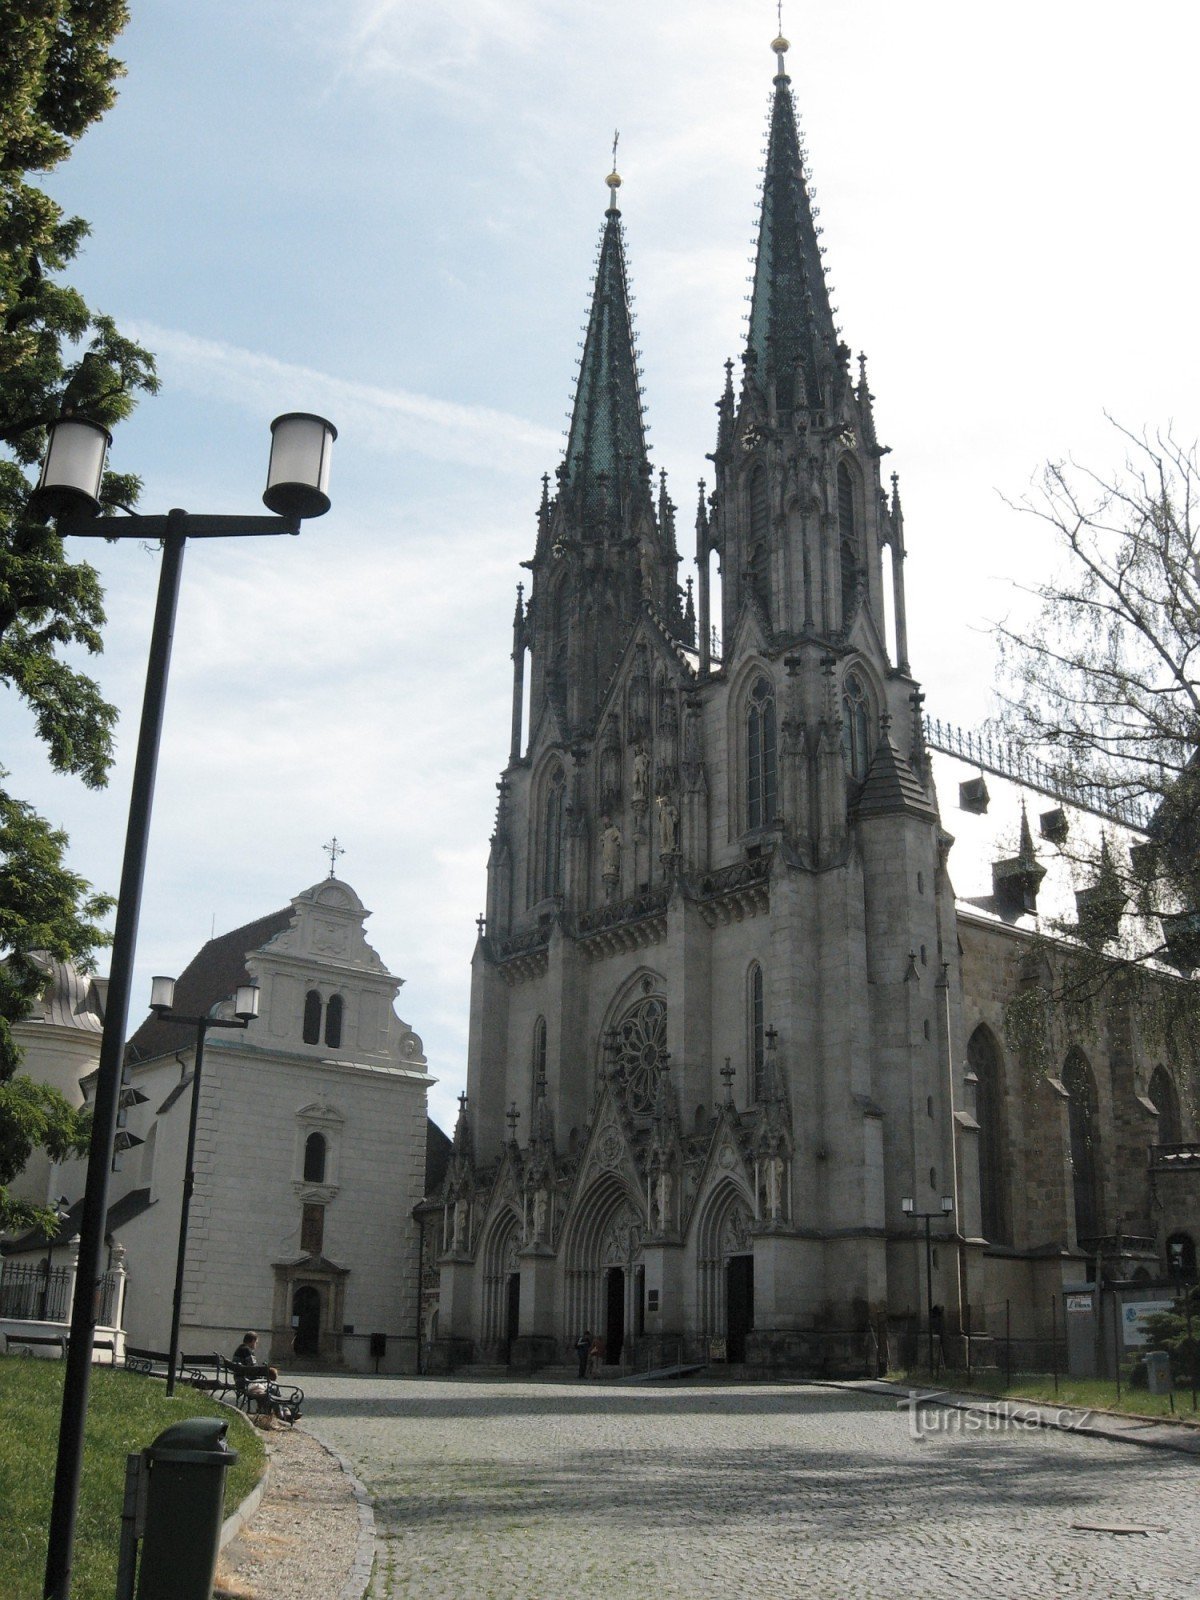 La Olomouc nu numai pentru monumentele istorice 2008